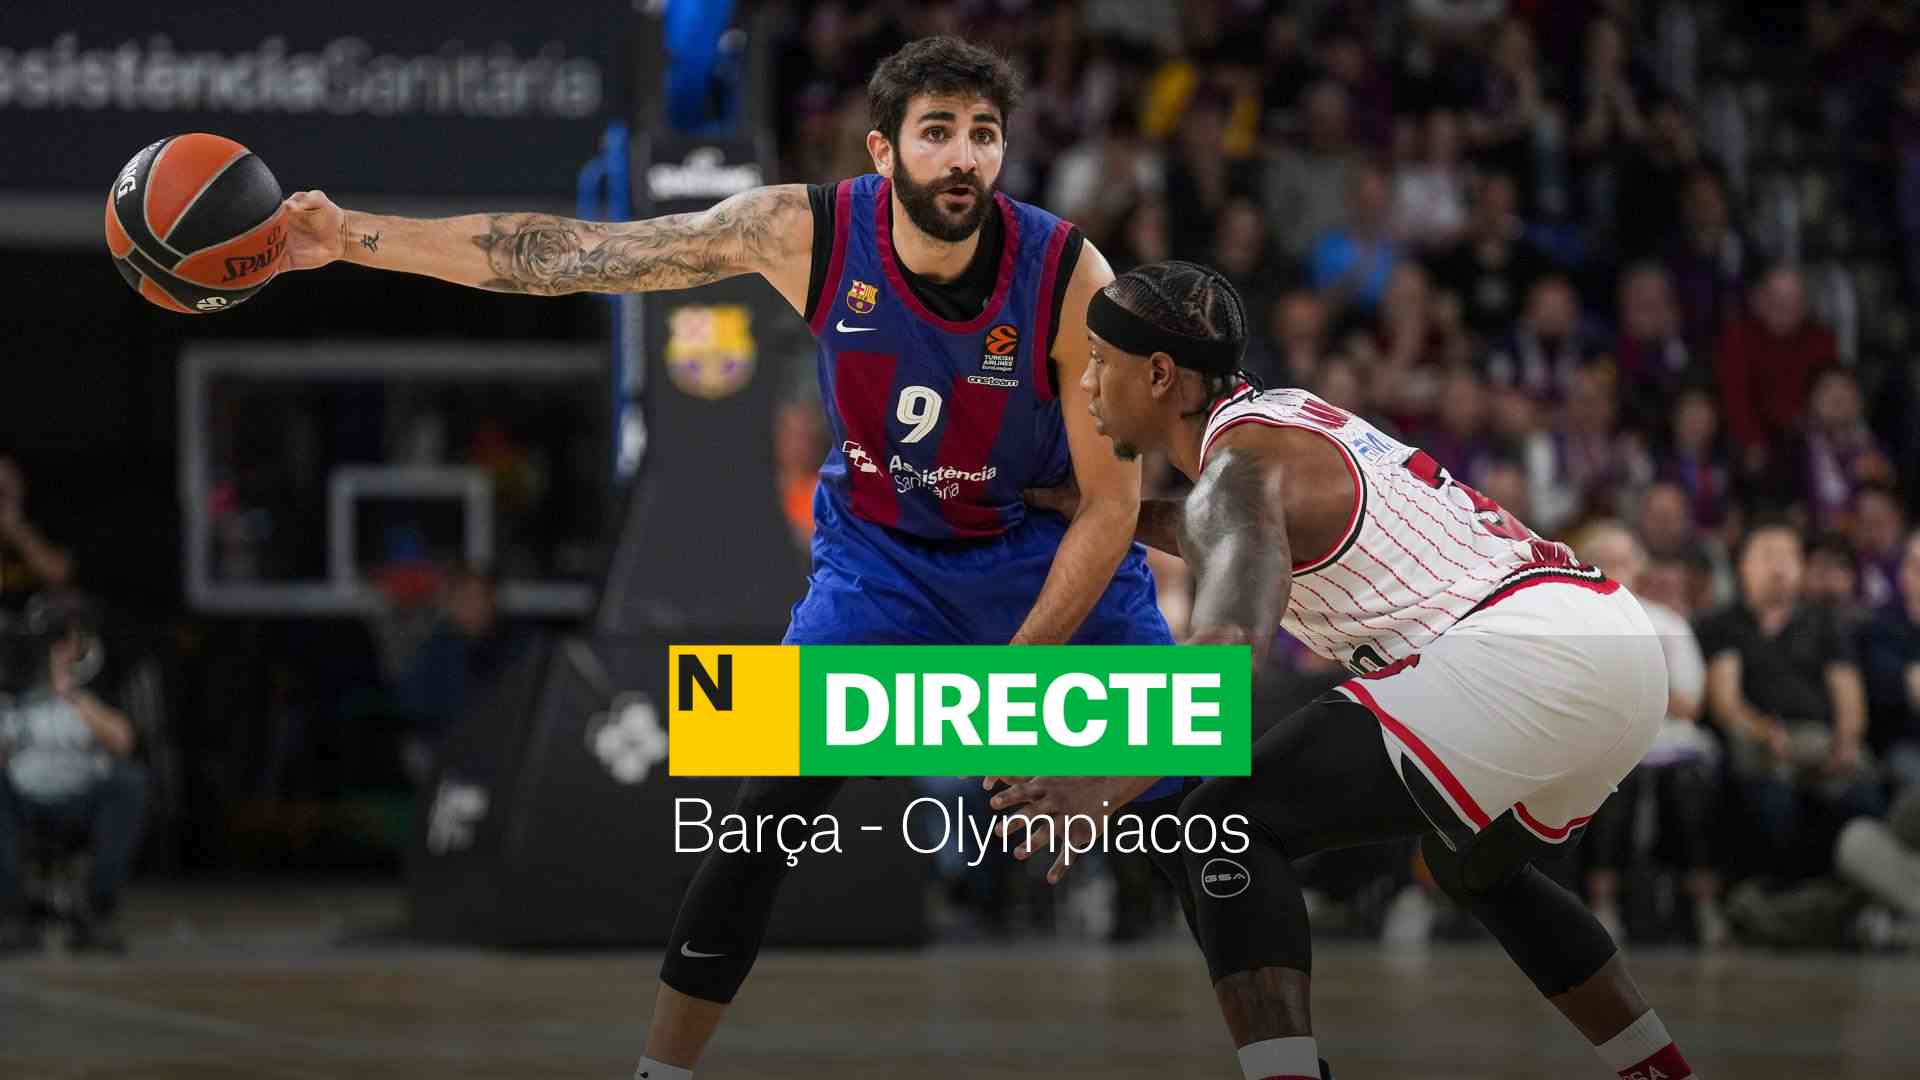 Barcelona - Olympiacos de la Euroliga de baloncesto, DIRECTO | Resultado y resumen